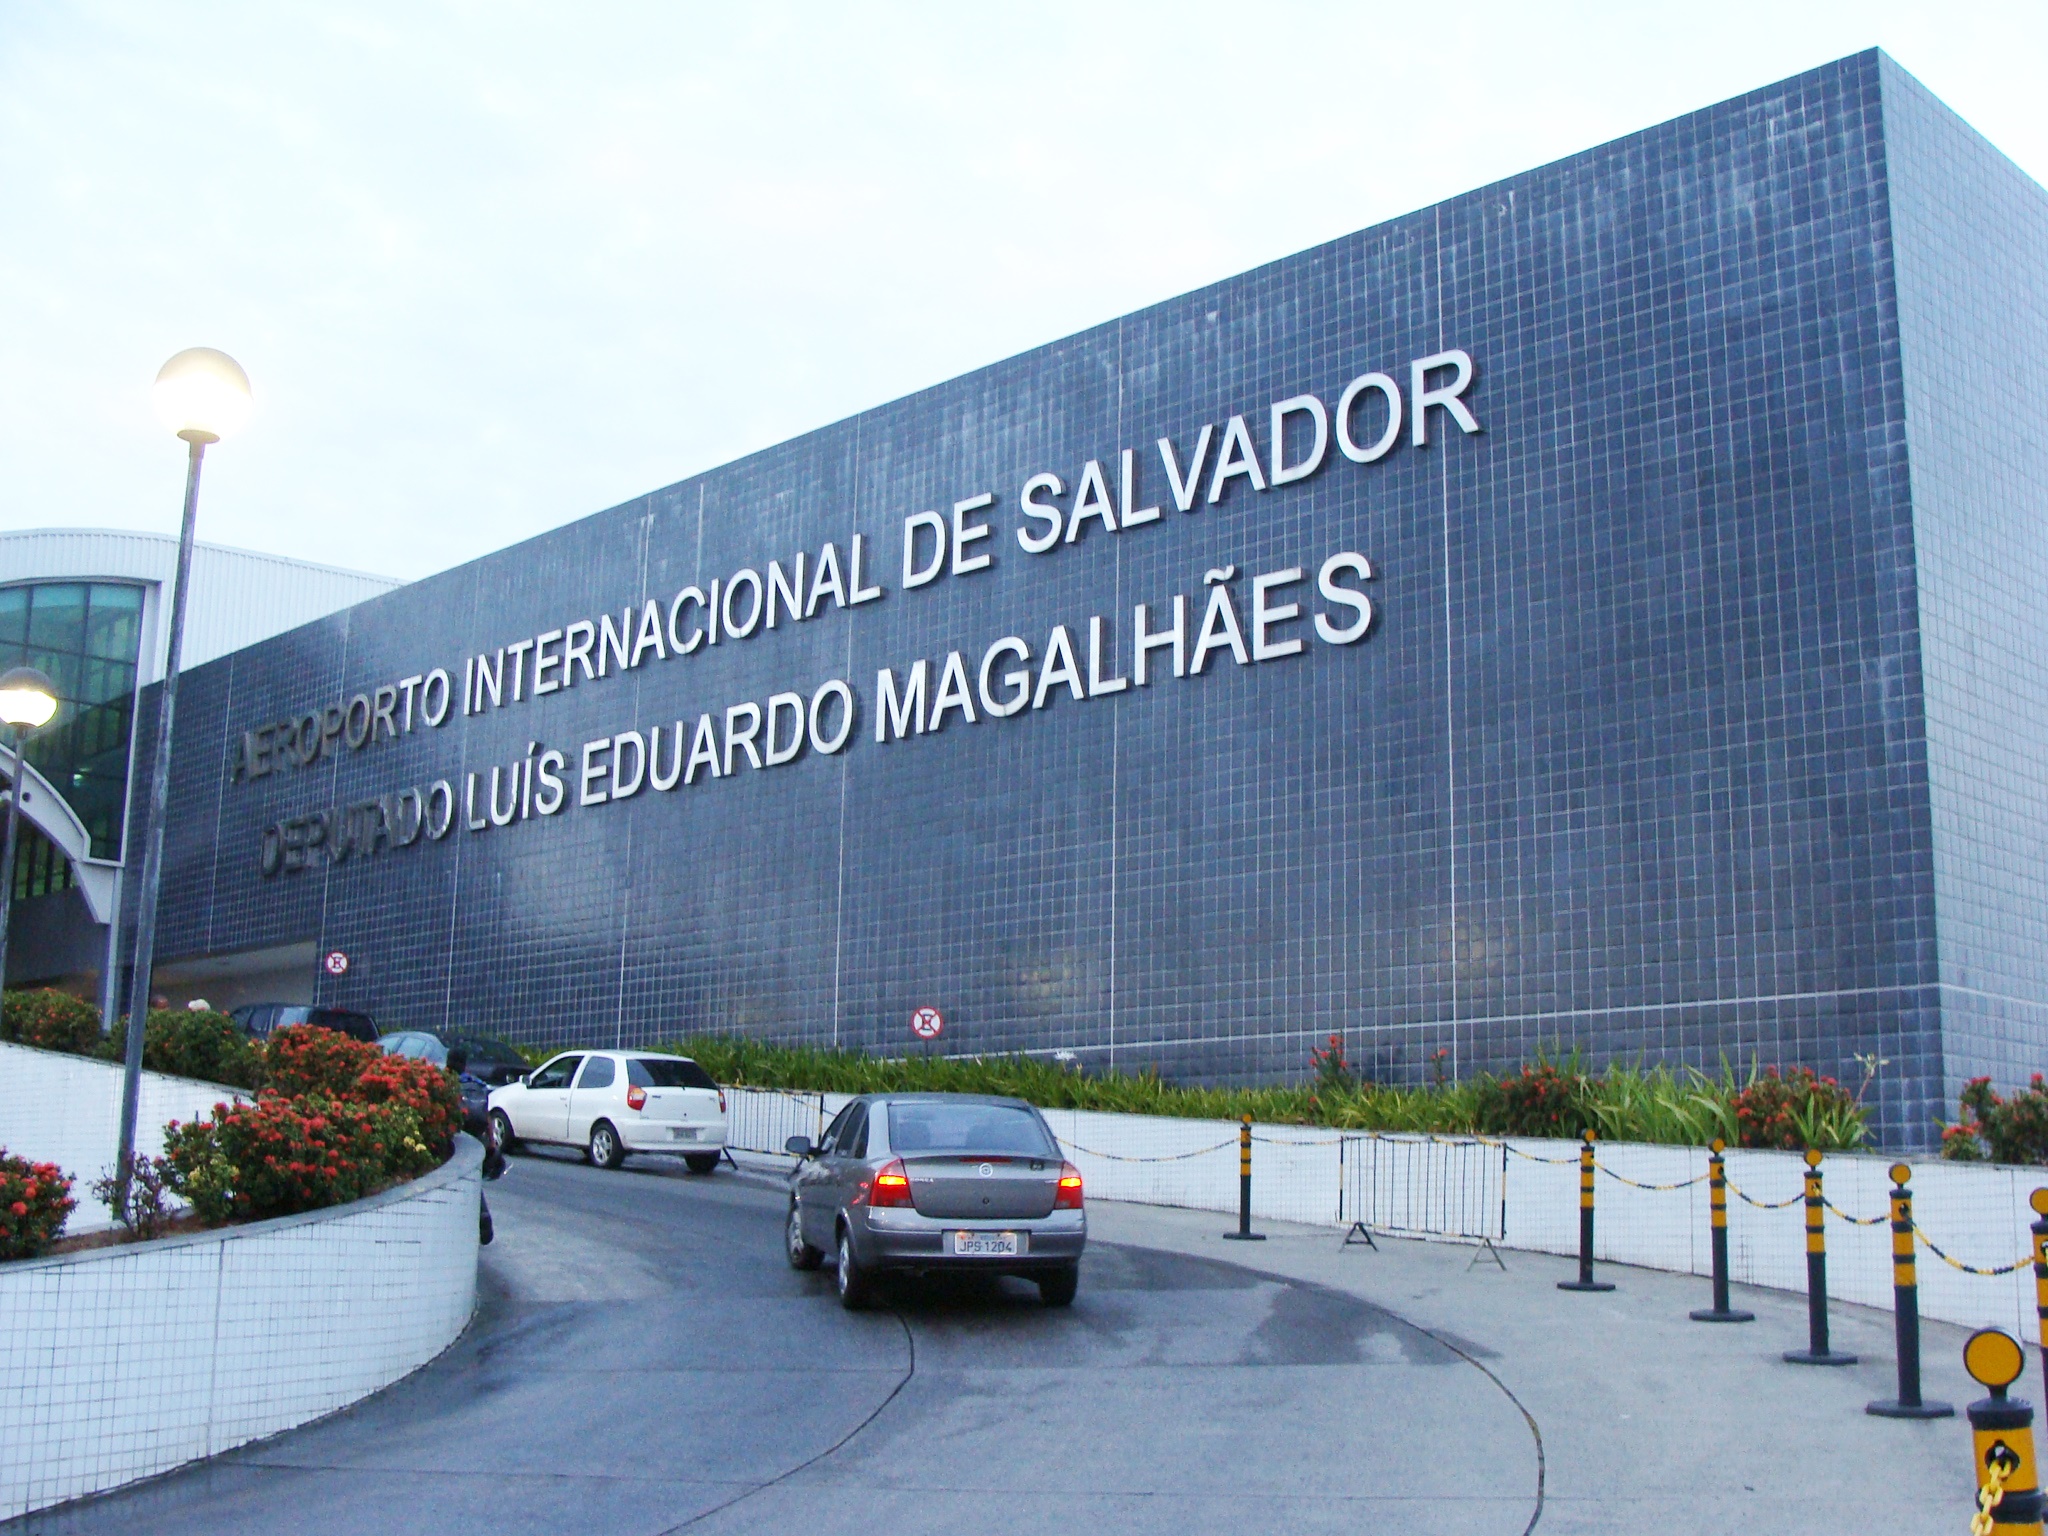 Dupla que roubava bancos e praticava homicídios é surpreendida na saída do Aeroporto em Salvador